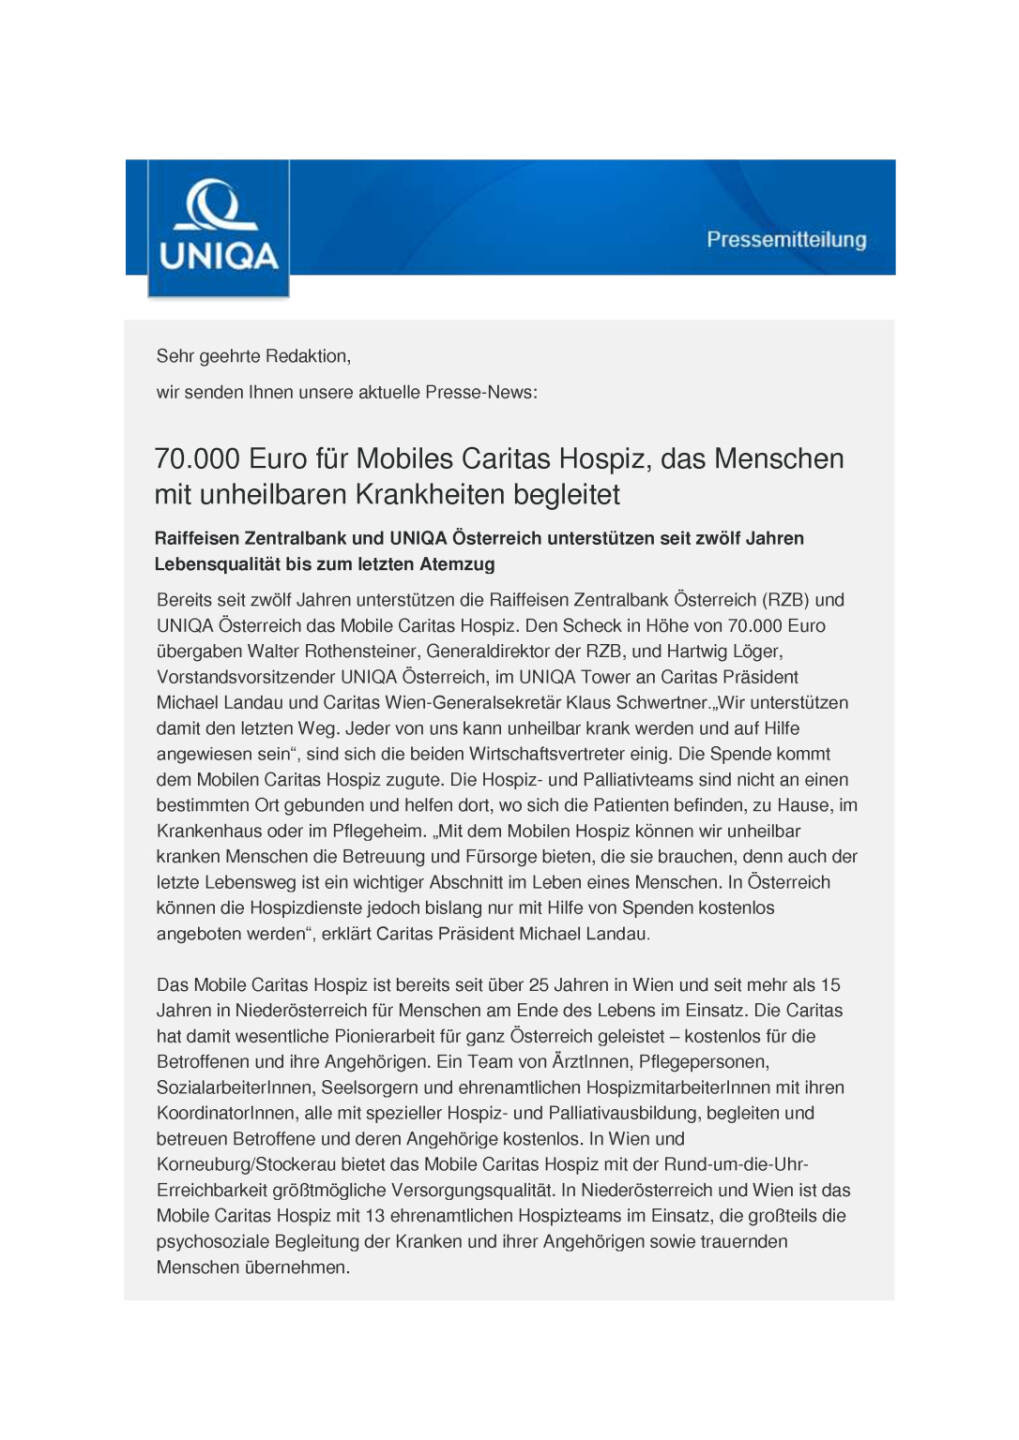 Uniqa Österreich und Raiffeisen Zentralbank unterstützen Mobiles Caritas Hospiz, Seite 1/2, komplettes Dokument unter http://boerse-social.com/static/uploads/file_1206_uniqa_osterreich_und_raiffeisen_zentralbank_unterstutzen_mobiles_caritas_hospiz.pdf